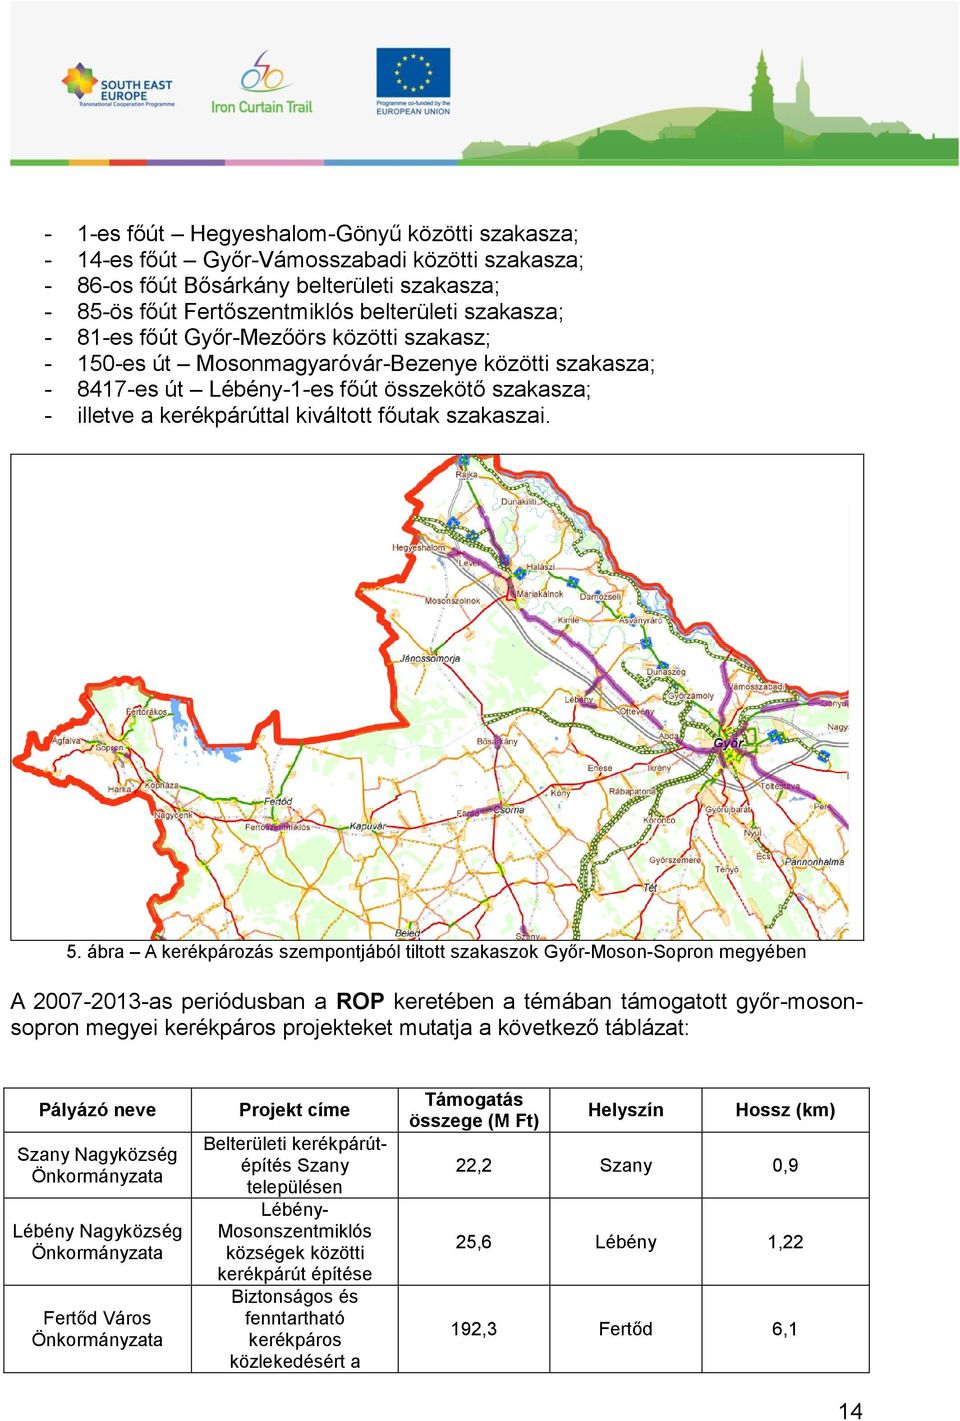 5. ábra A kerékpározás szempontjából tiltott szakaszok Győr-Moson-Sopron megyében A 2007-2013-as periódusban a ROP keretében a témában támogatott győr-mosonsopron megyei kerékpáros projekteket